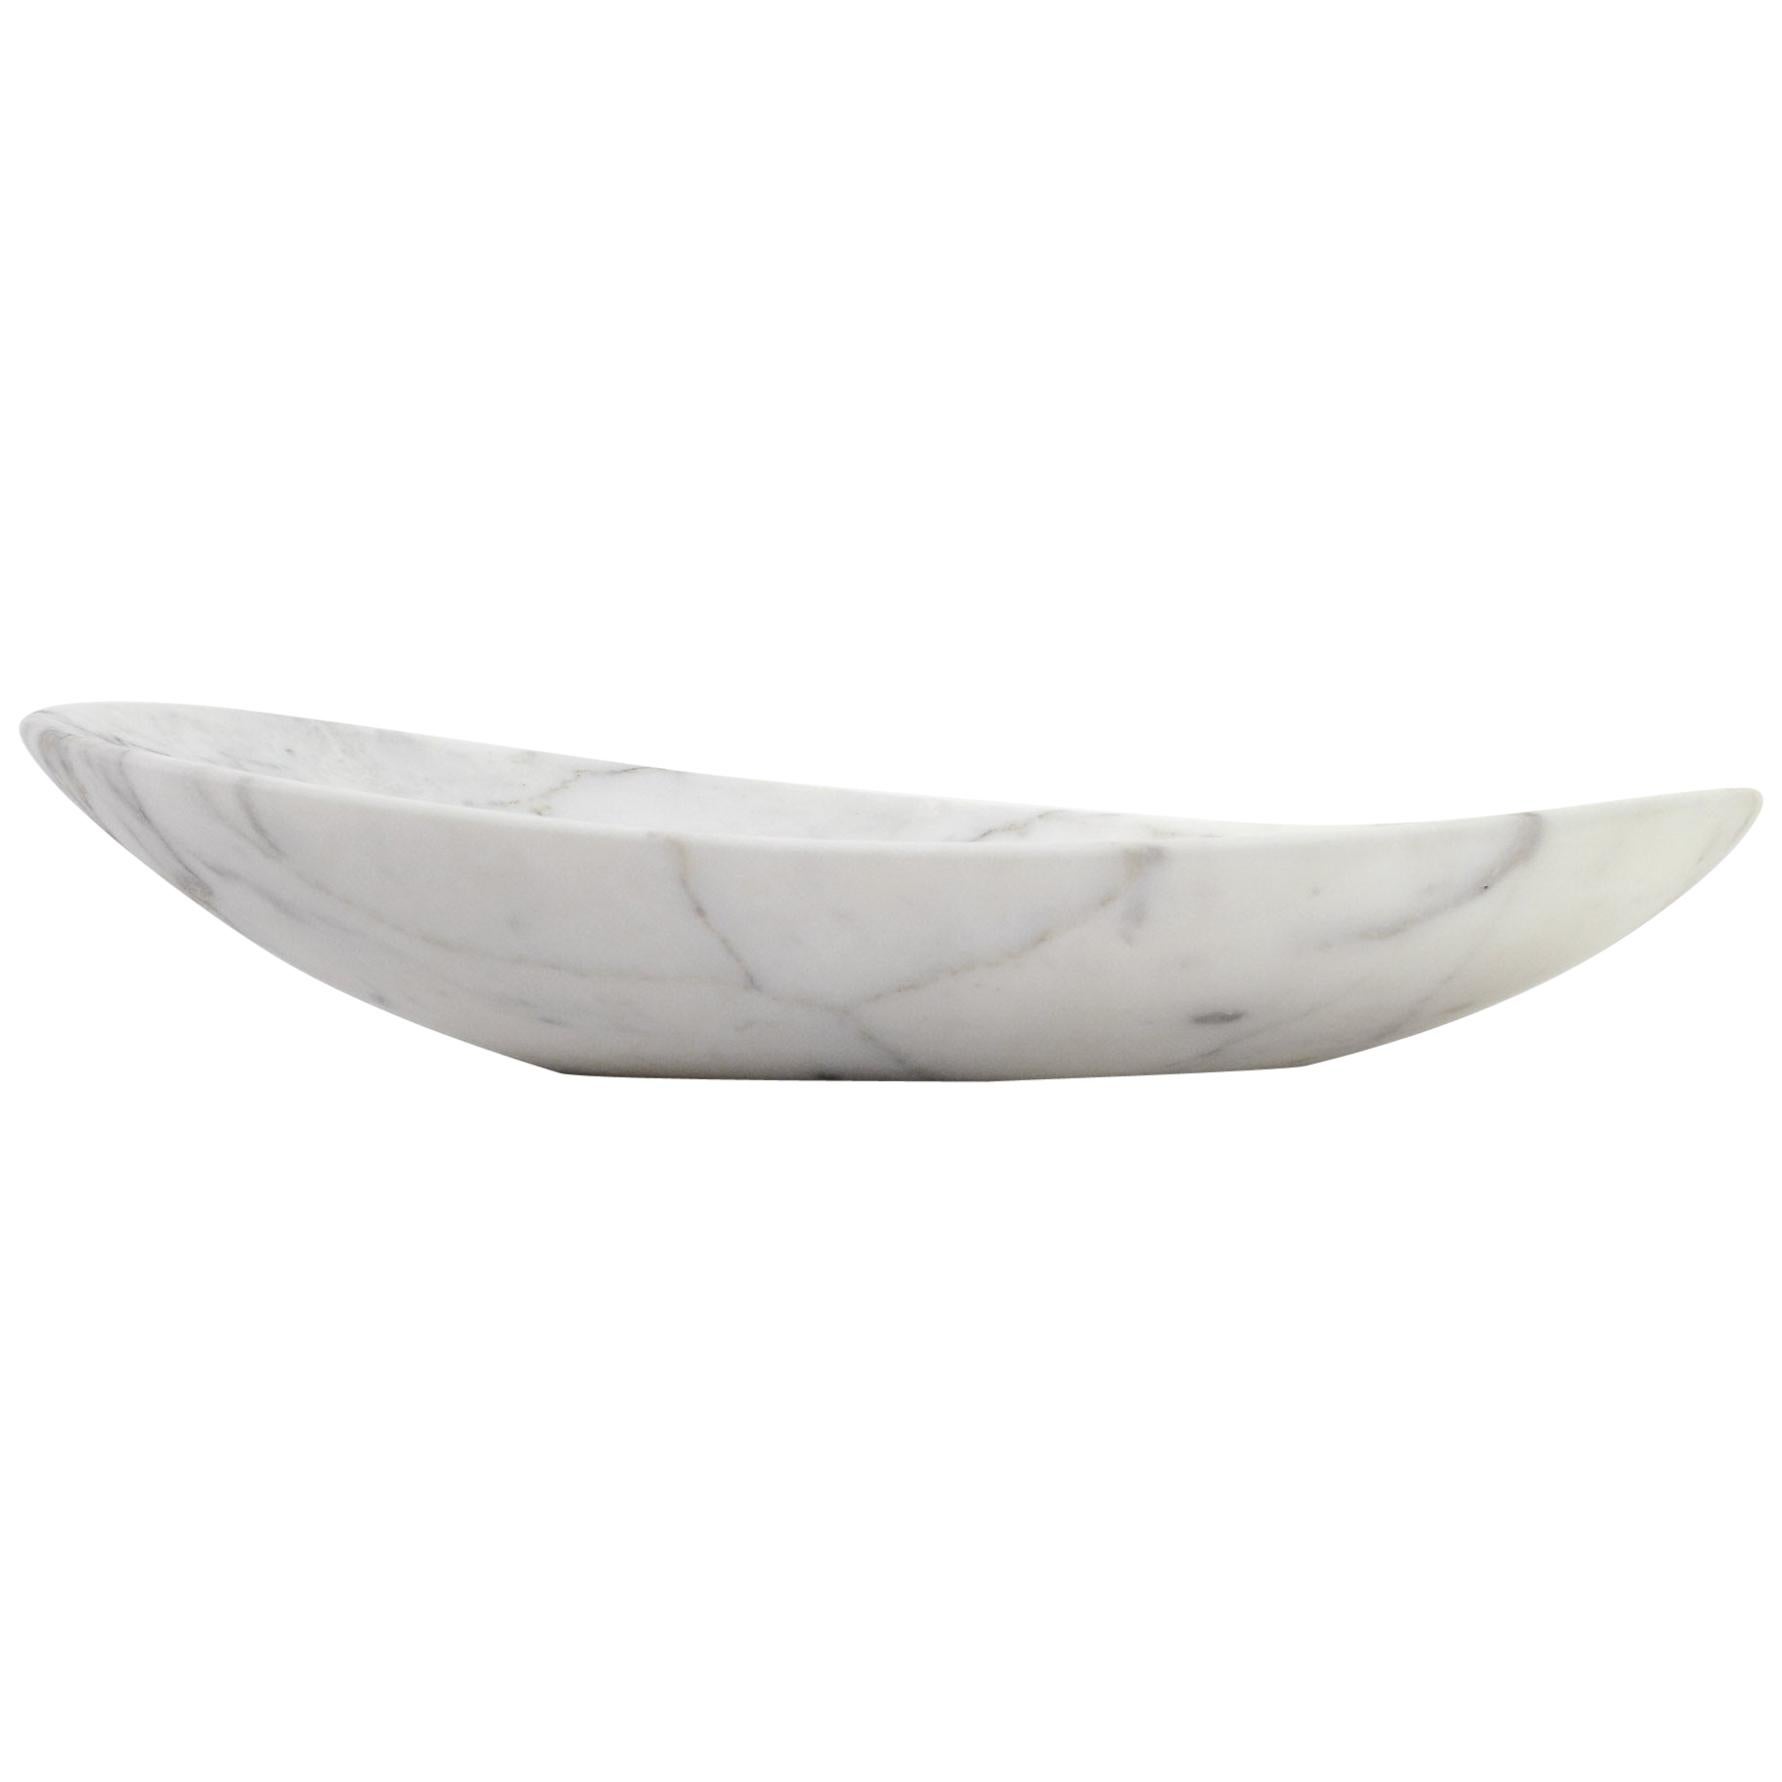 Schale Vase Tafelaufsatz Serviergeschirr Block Weiß Calacatta Marmor Handgeschnitzt Italien